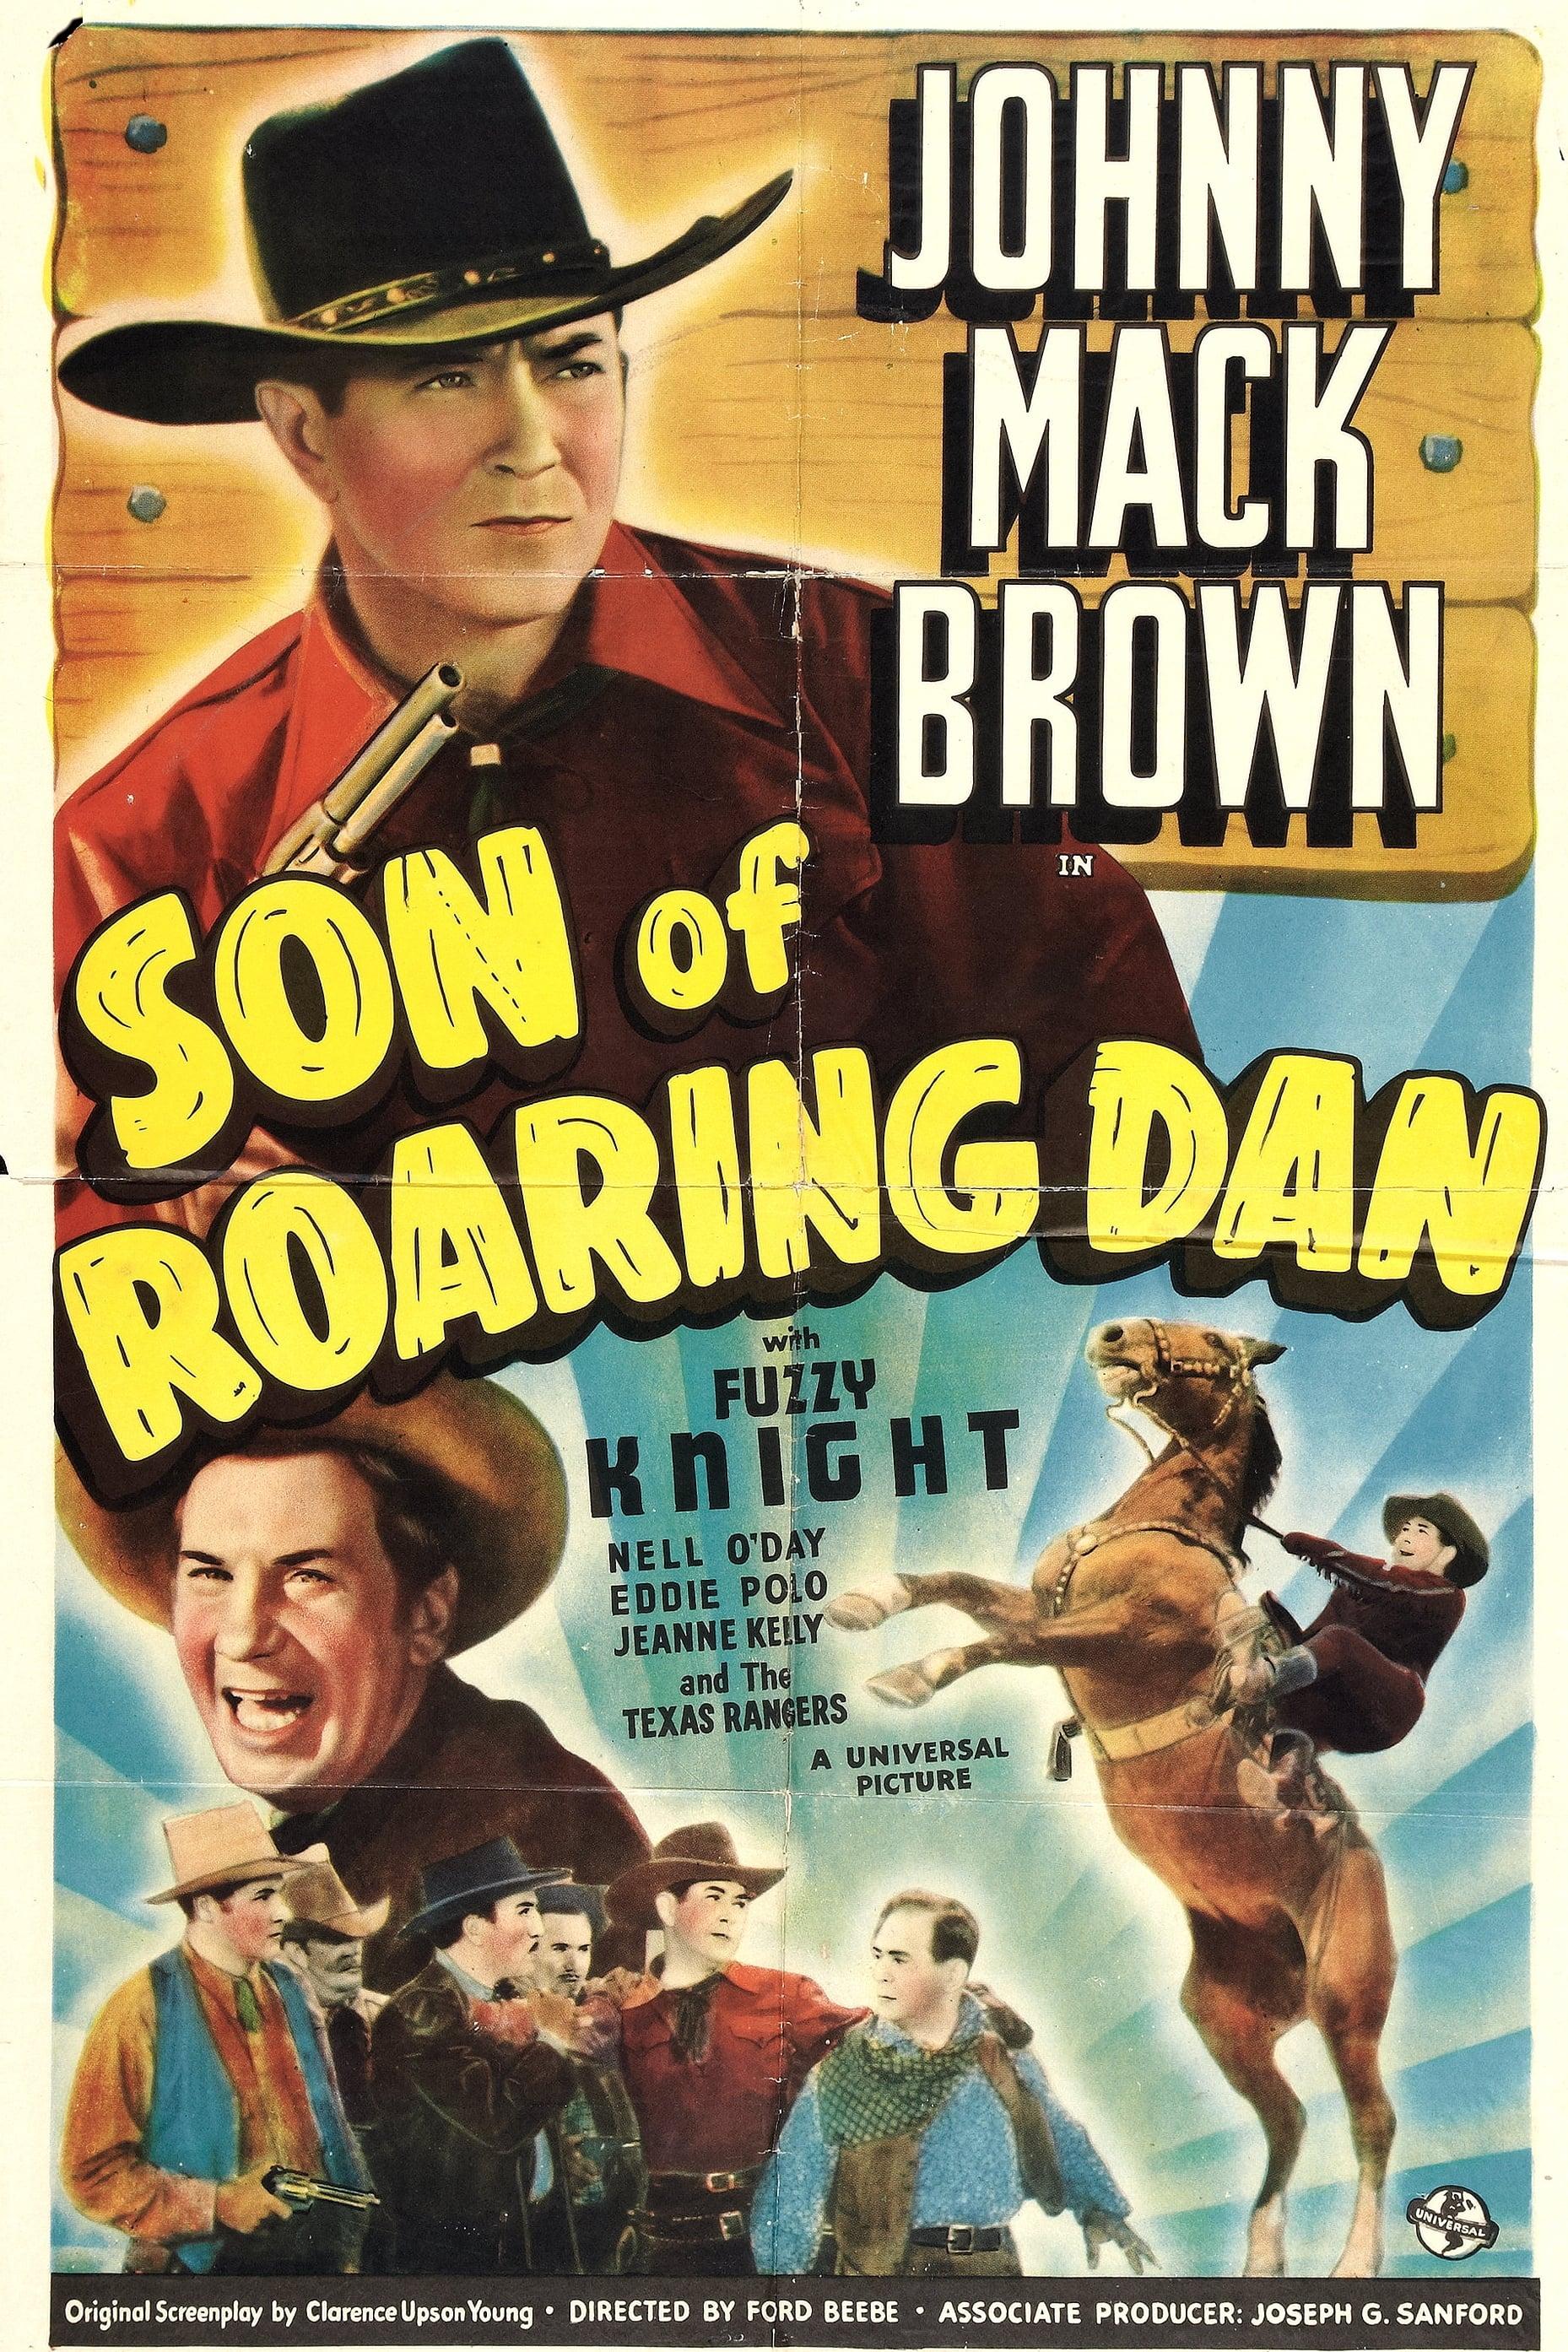 Son of Roaring Dan poster